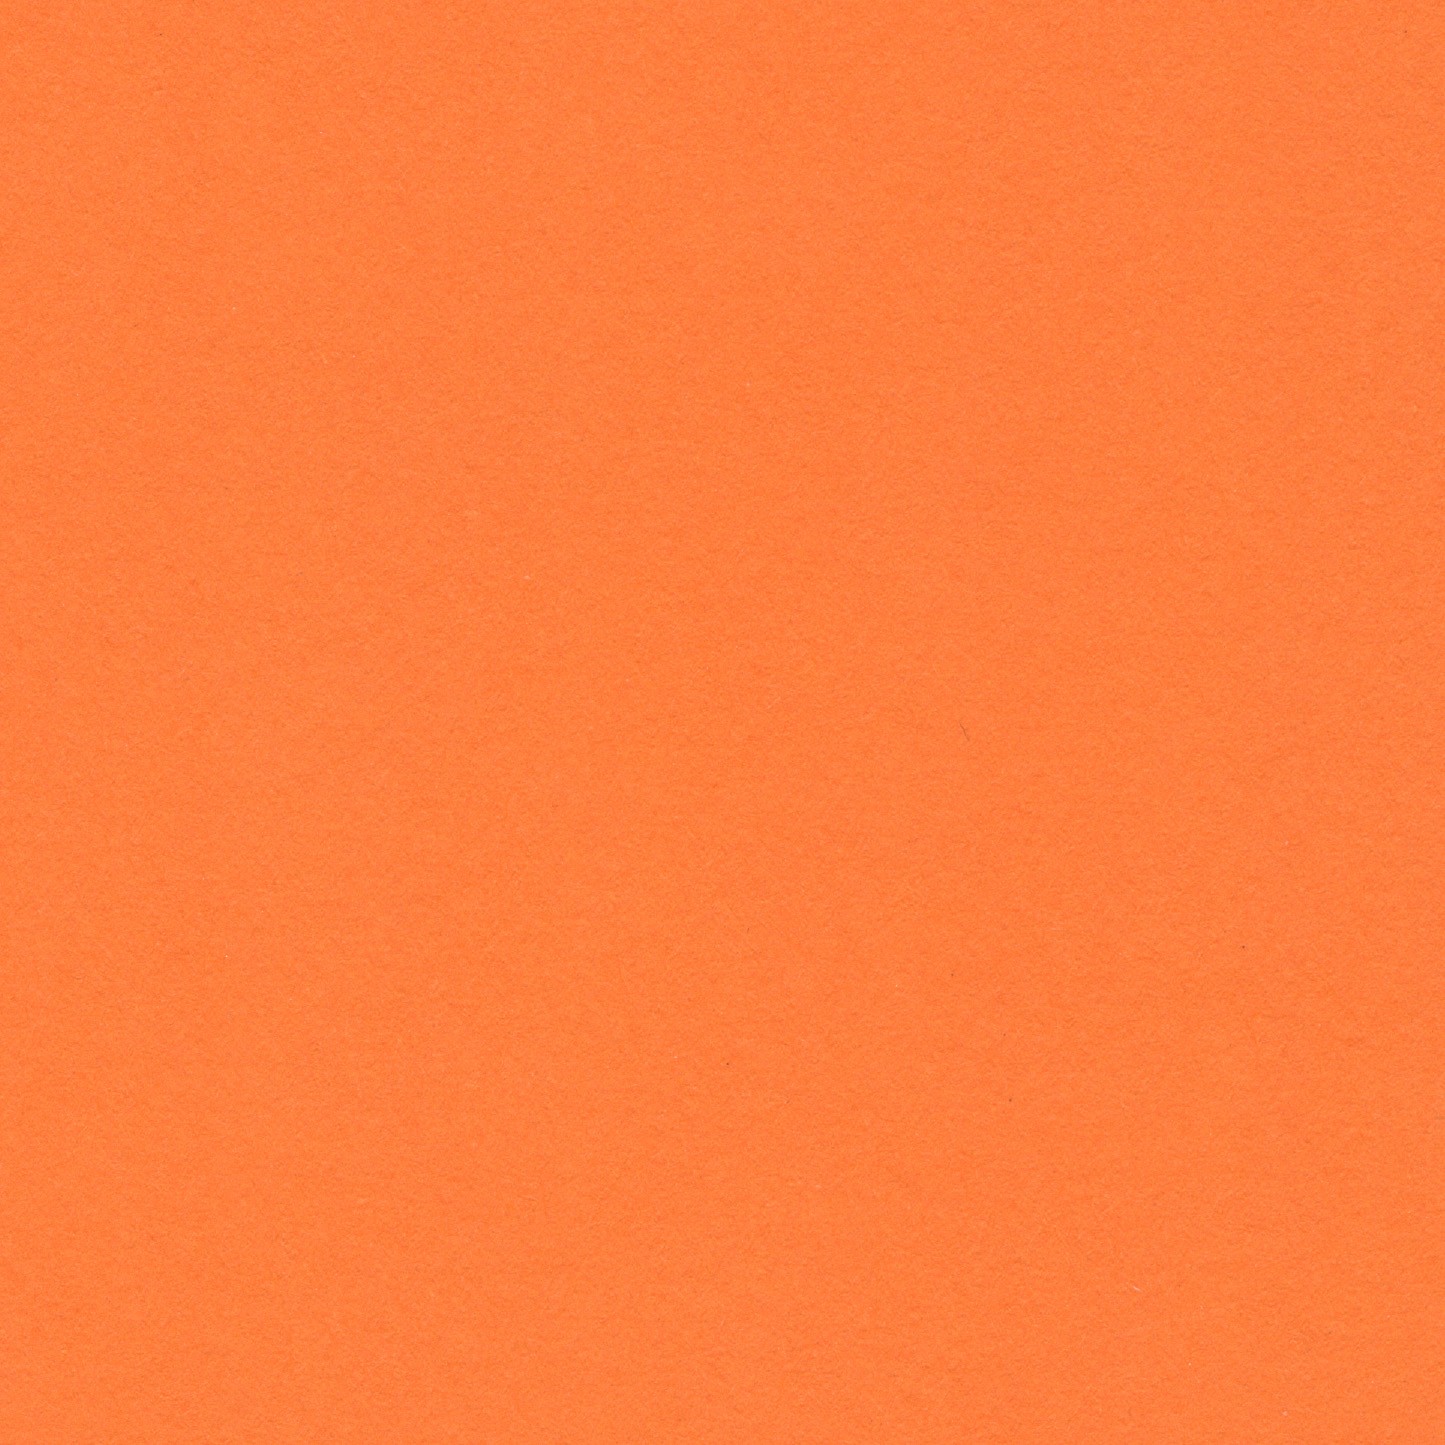 Orange - Bright 150gsm